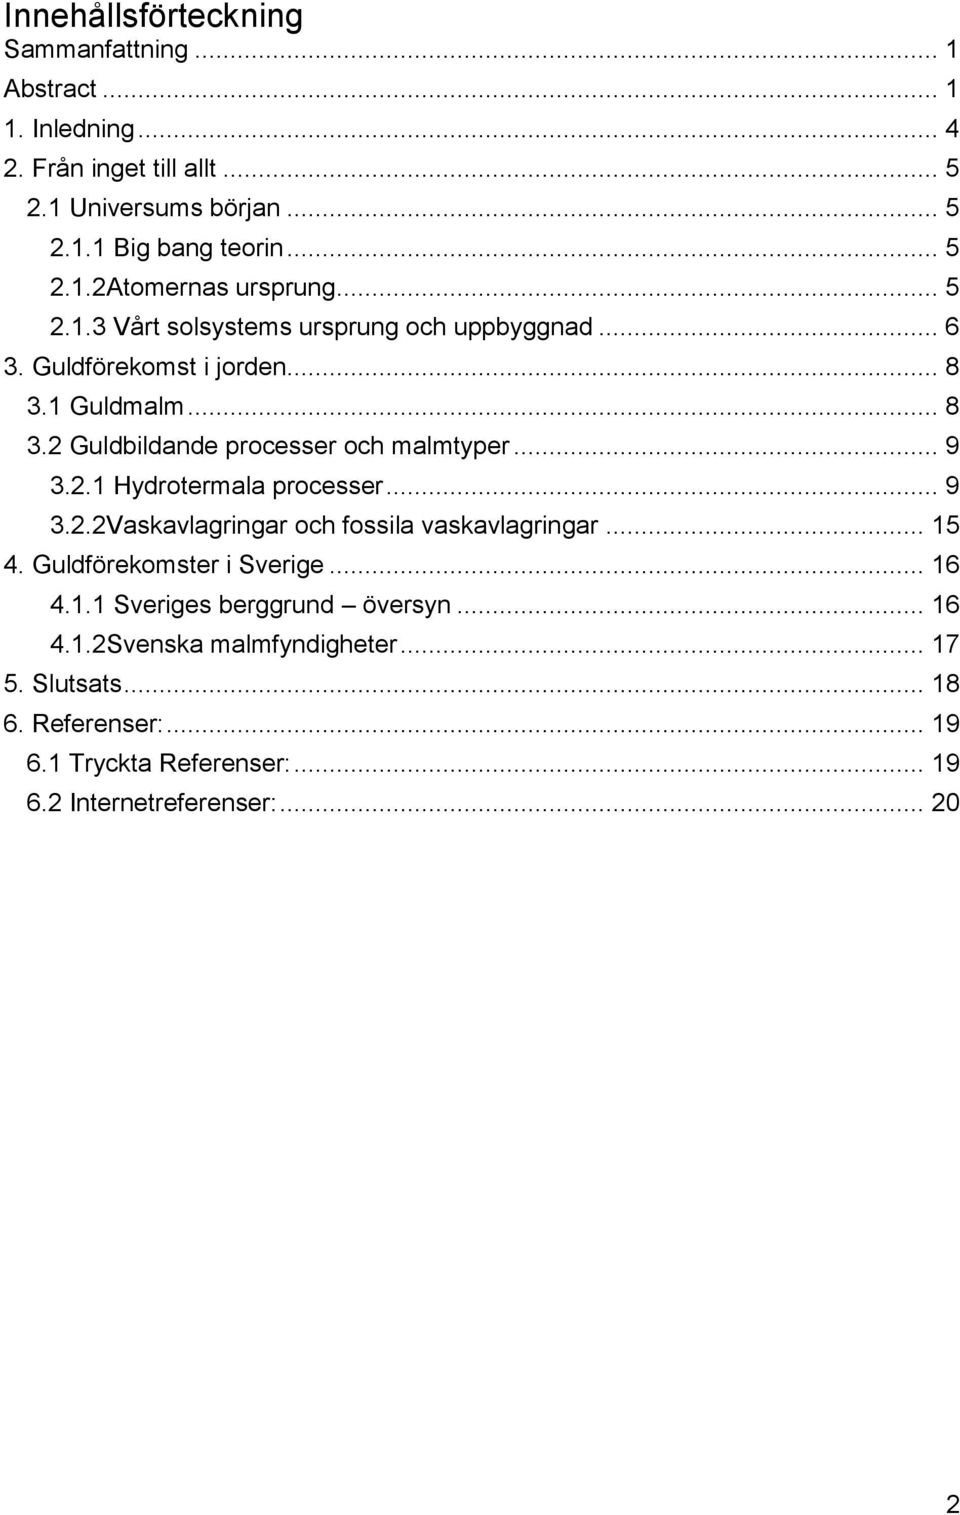 .. 9 3.2.2Vaskavlagringar och fossila vaskavlagringar... 15 4. Guldförekomster i Sverige... 16 4.1.1 Sveriges berggrund översyn... 16 4.1.2Svenska malmfyndigheter.